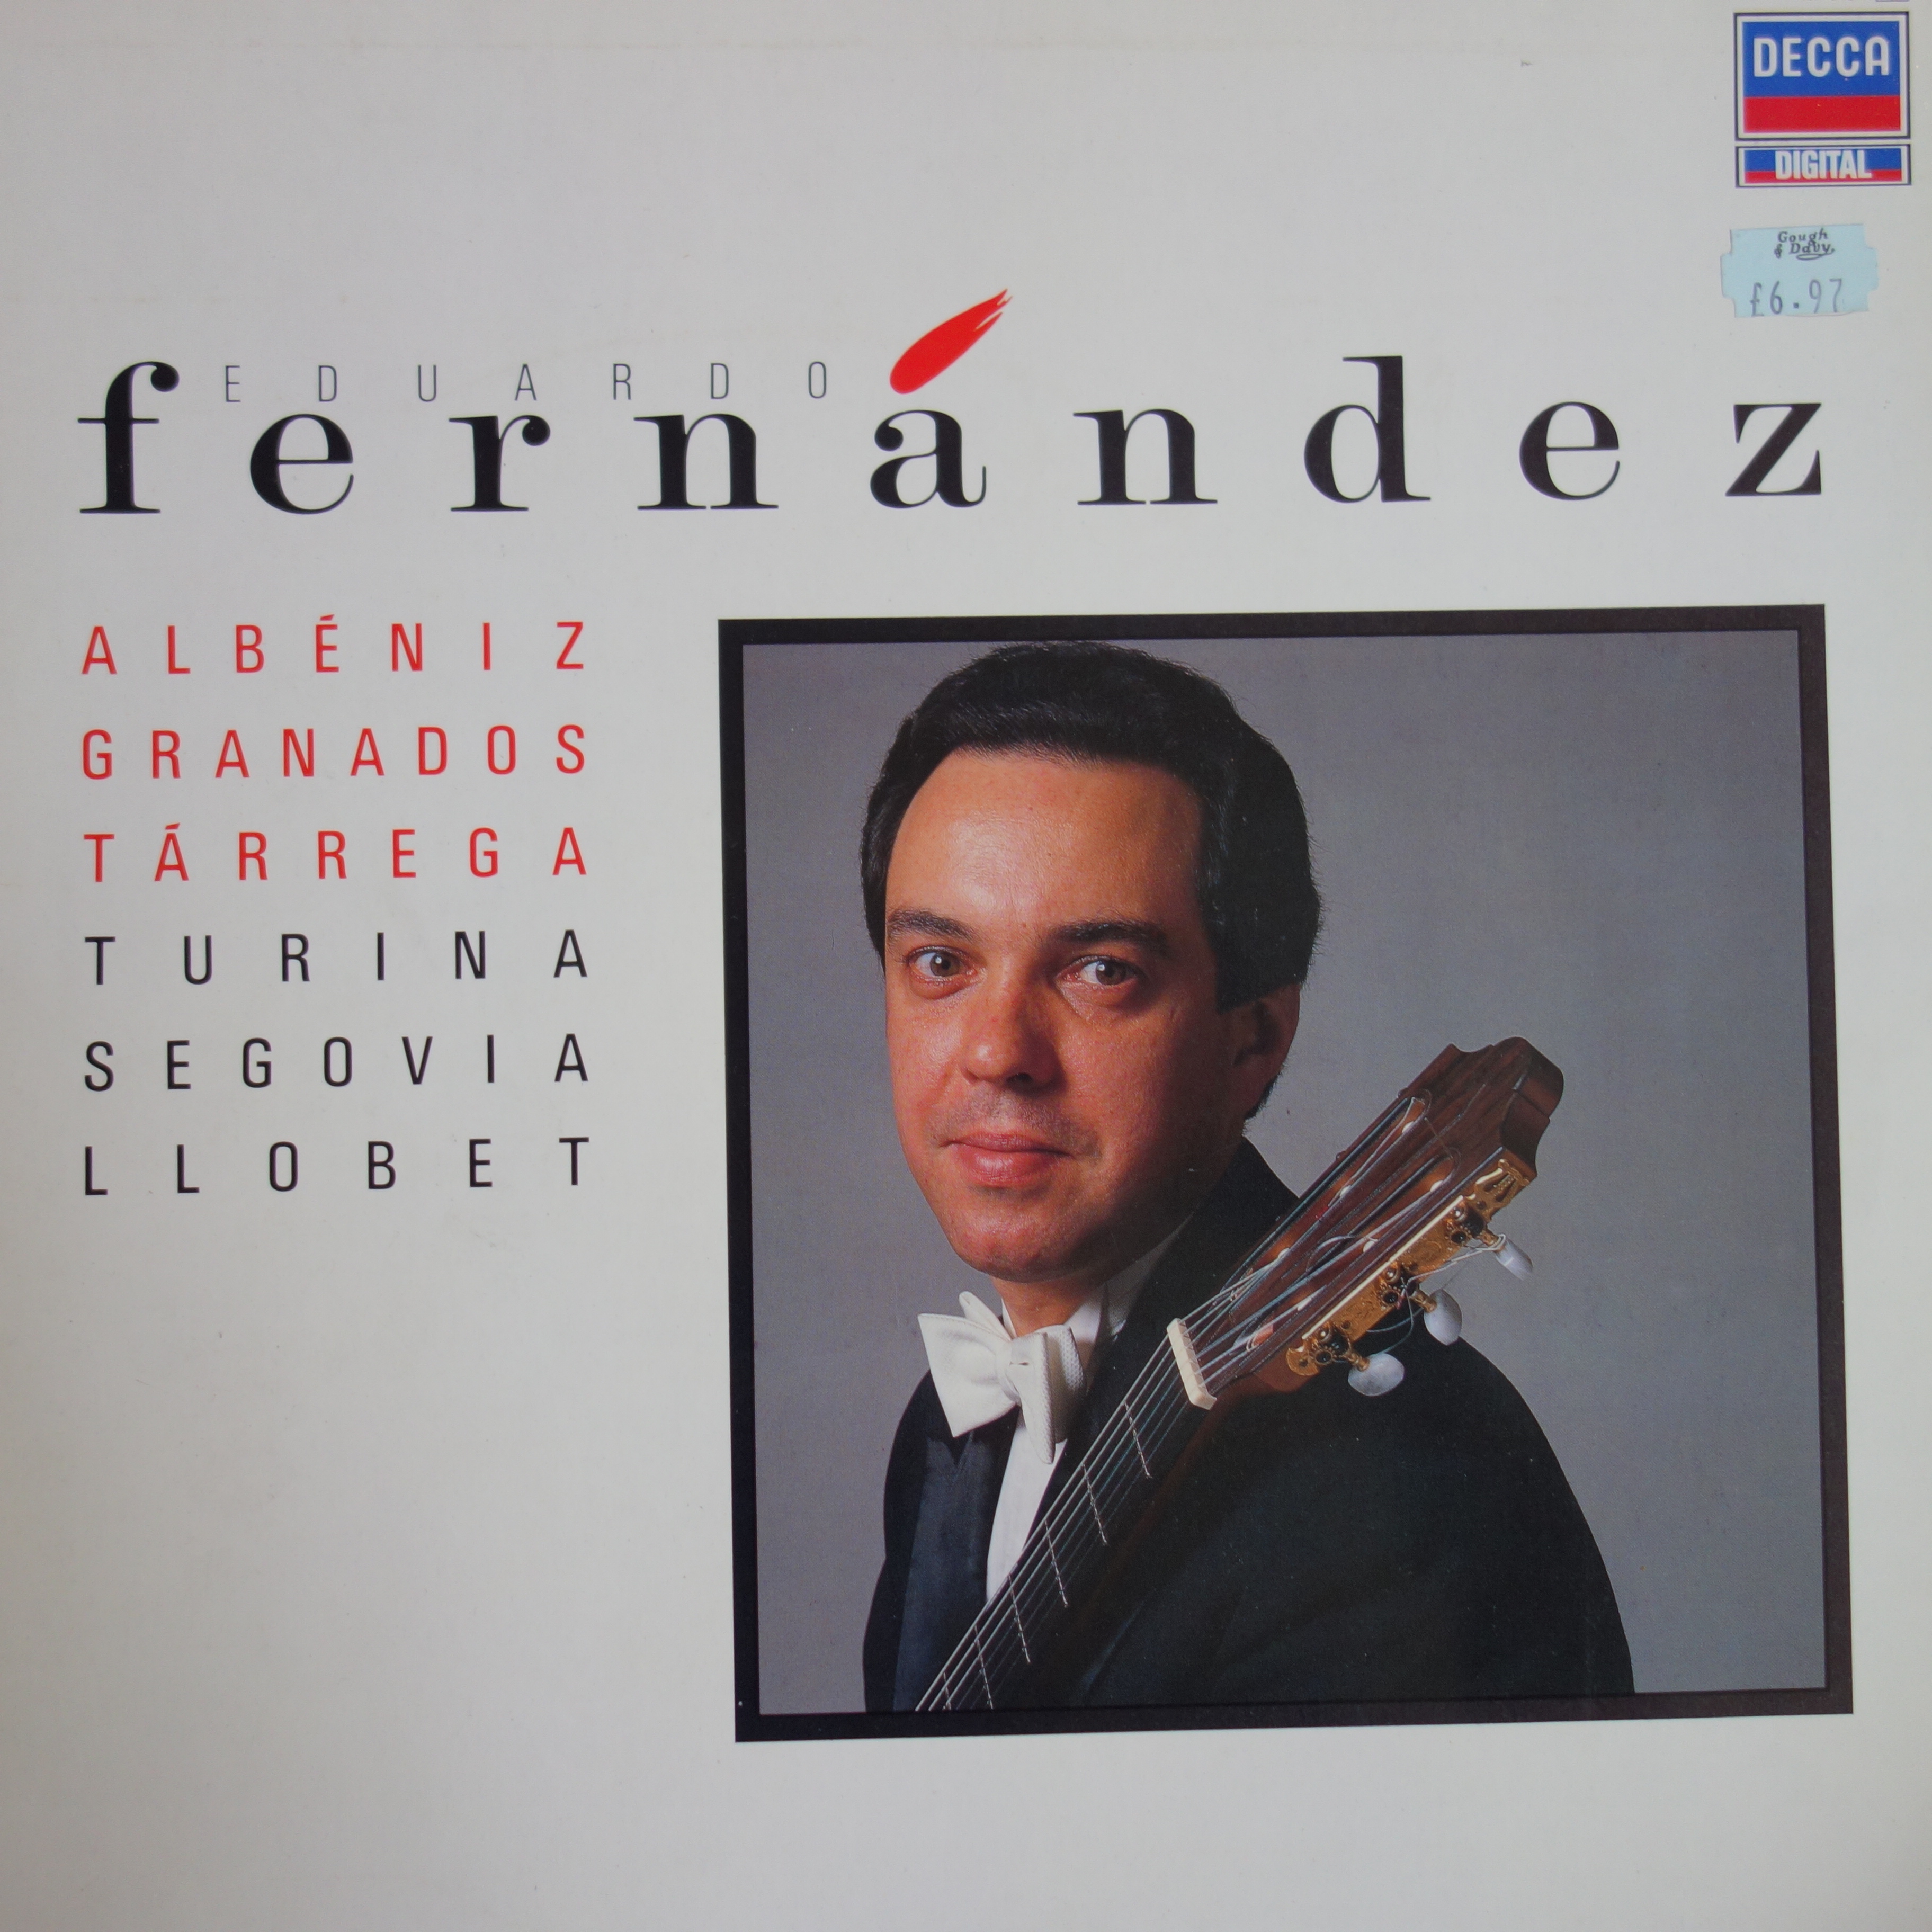 417 618-1 Eduardo Fernadez Albeniz / Tarrega / Granados